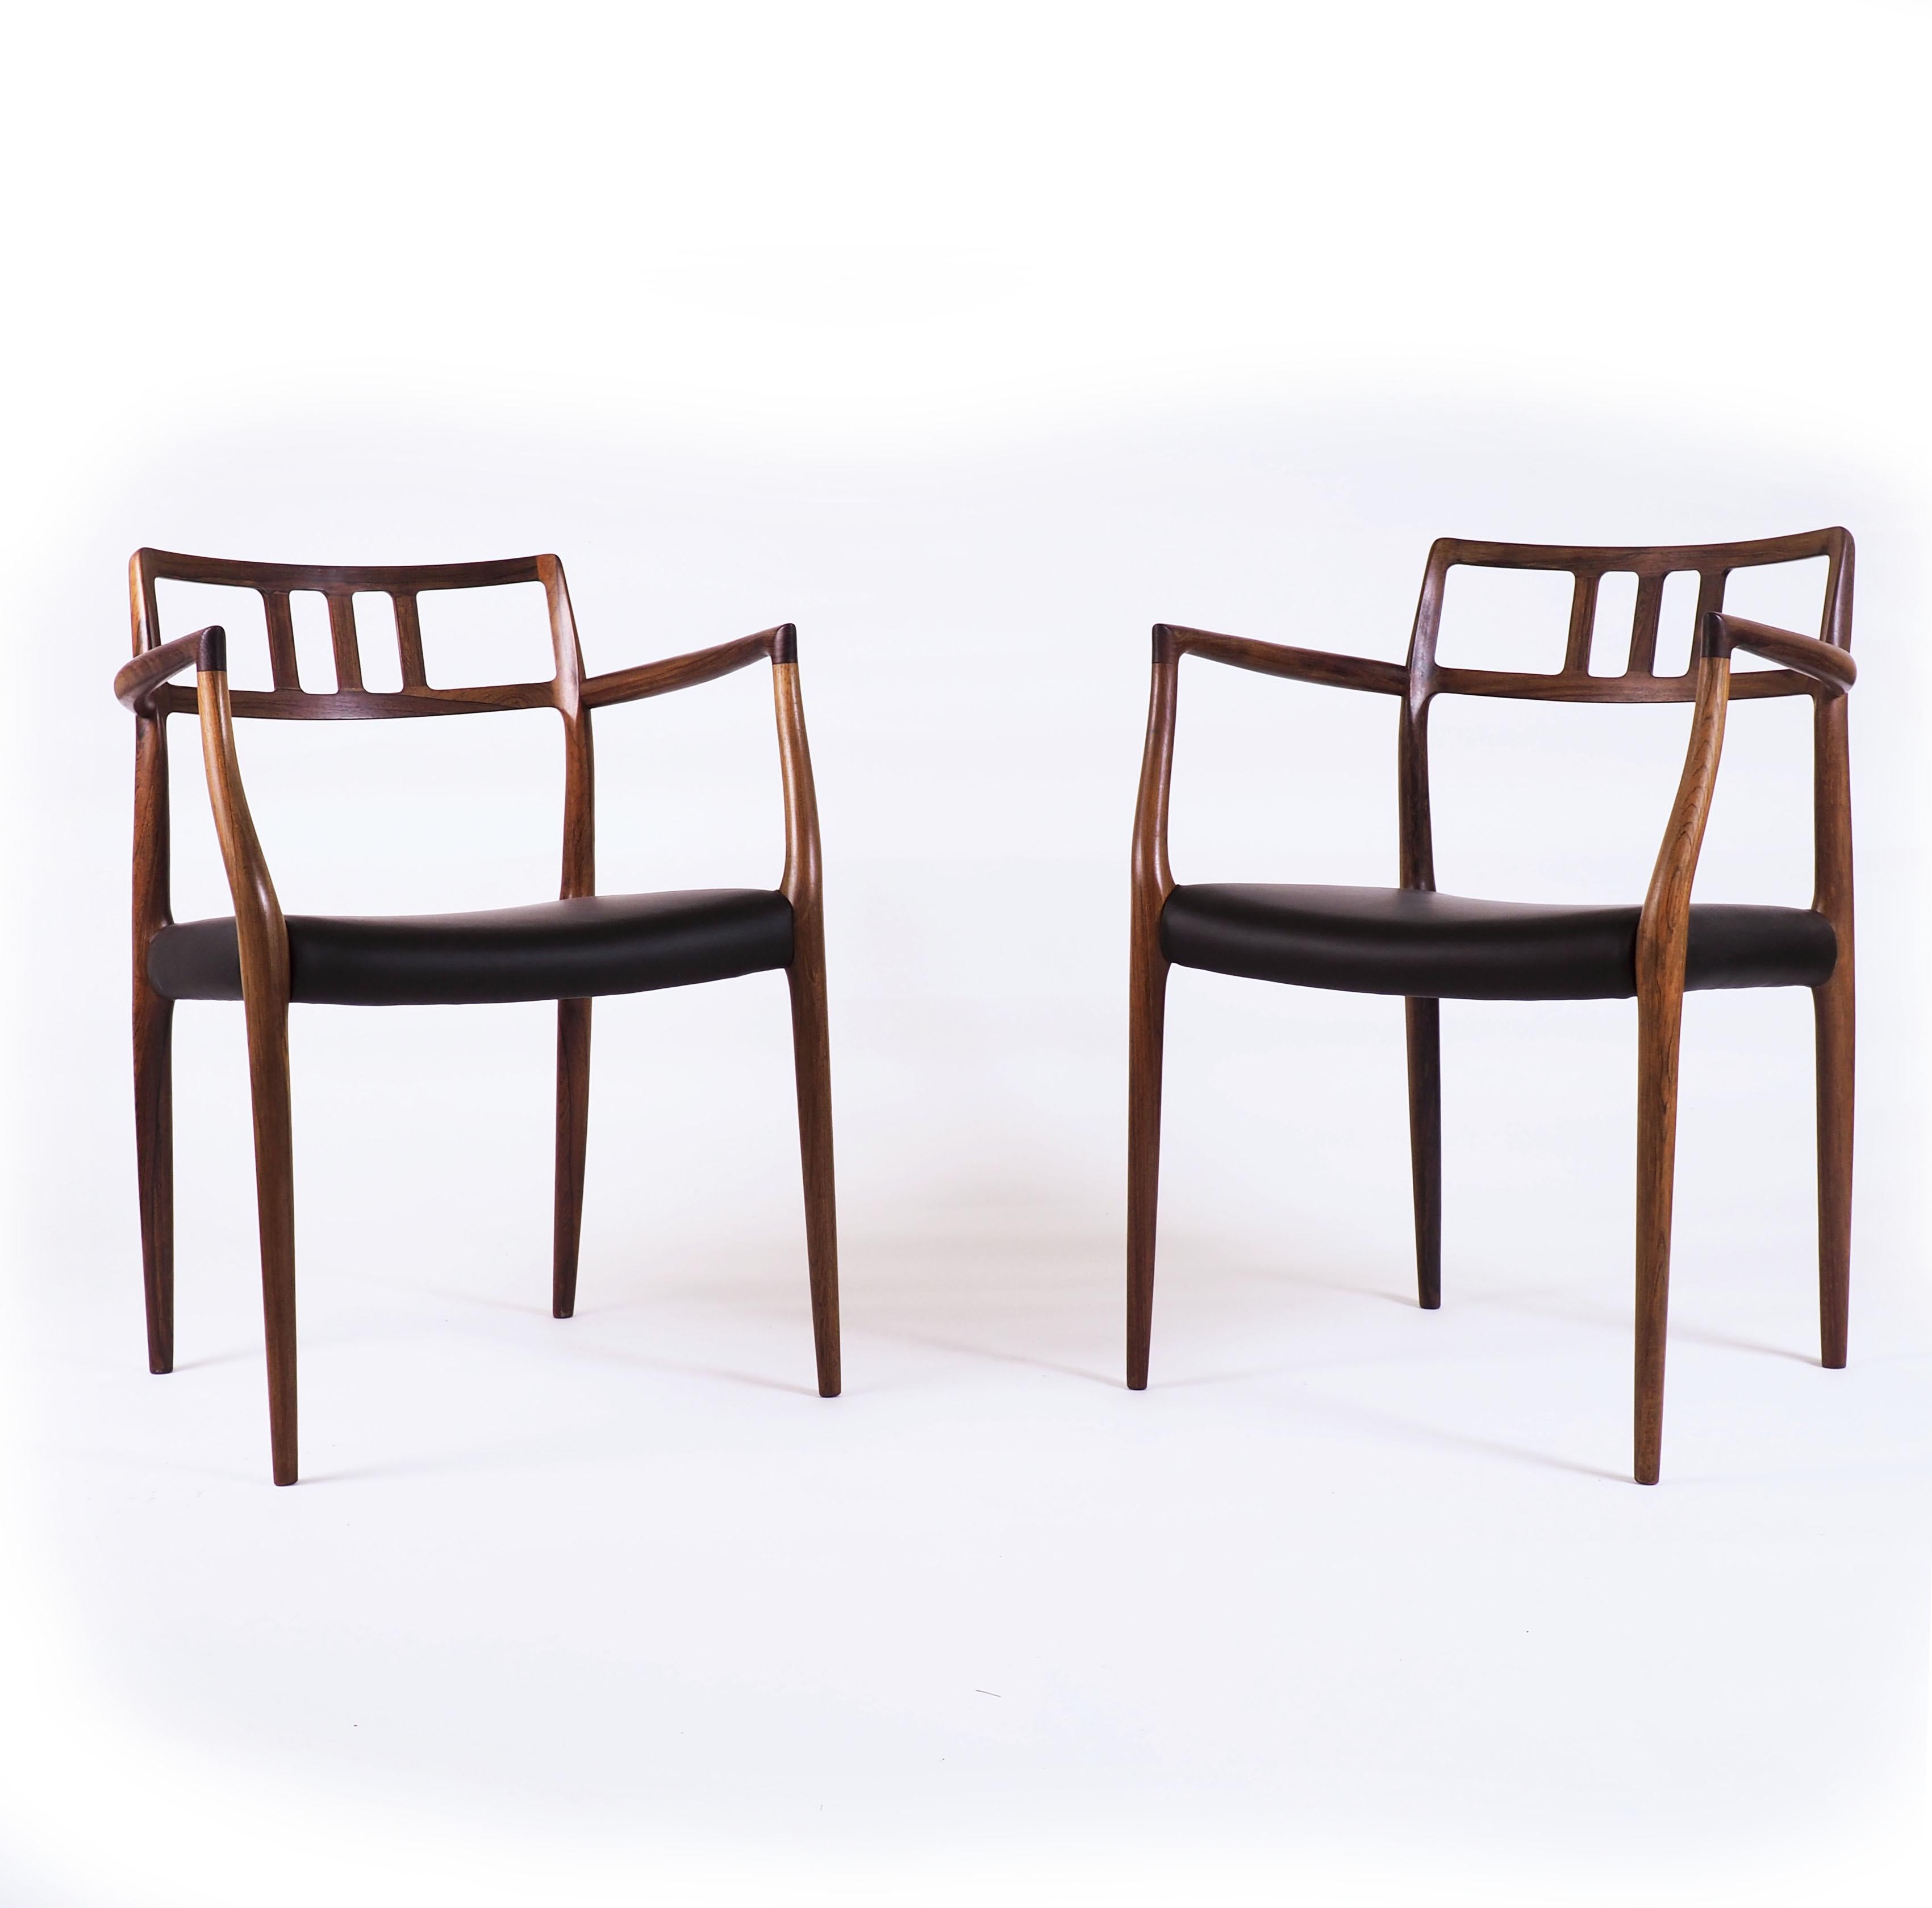 Diese beiden eleganten Sessel von Niels O. Møller wurden von der dänischen Qualitätsmöbelmanufaktur J.L.Møller hergestellt. Das Modell trug die Nummer 64. Dieses Paar ist aus massivem Palisanderholz gefertigt und hat schwarze Ledersitze.
Die